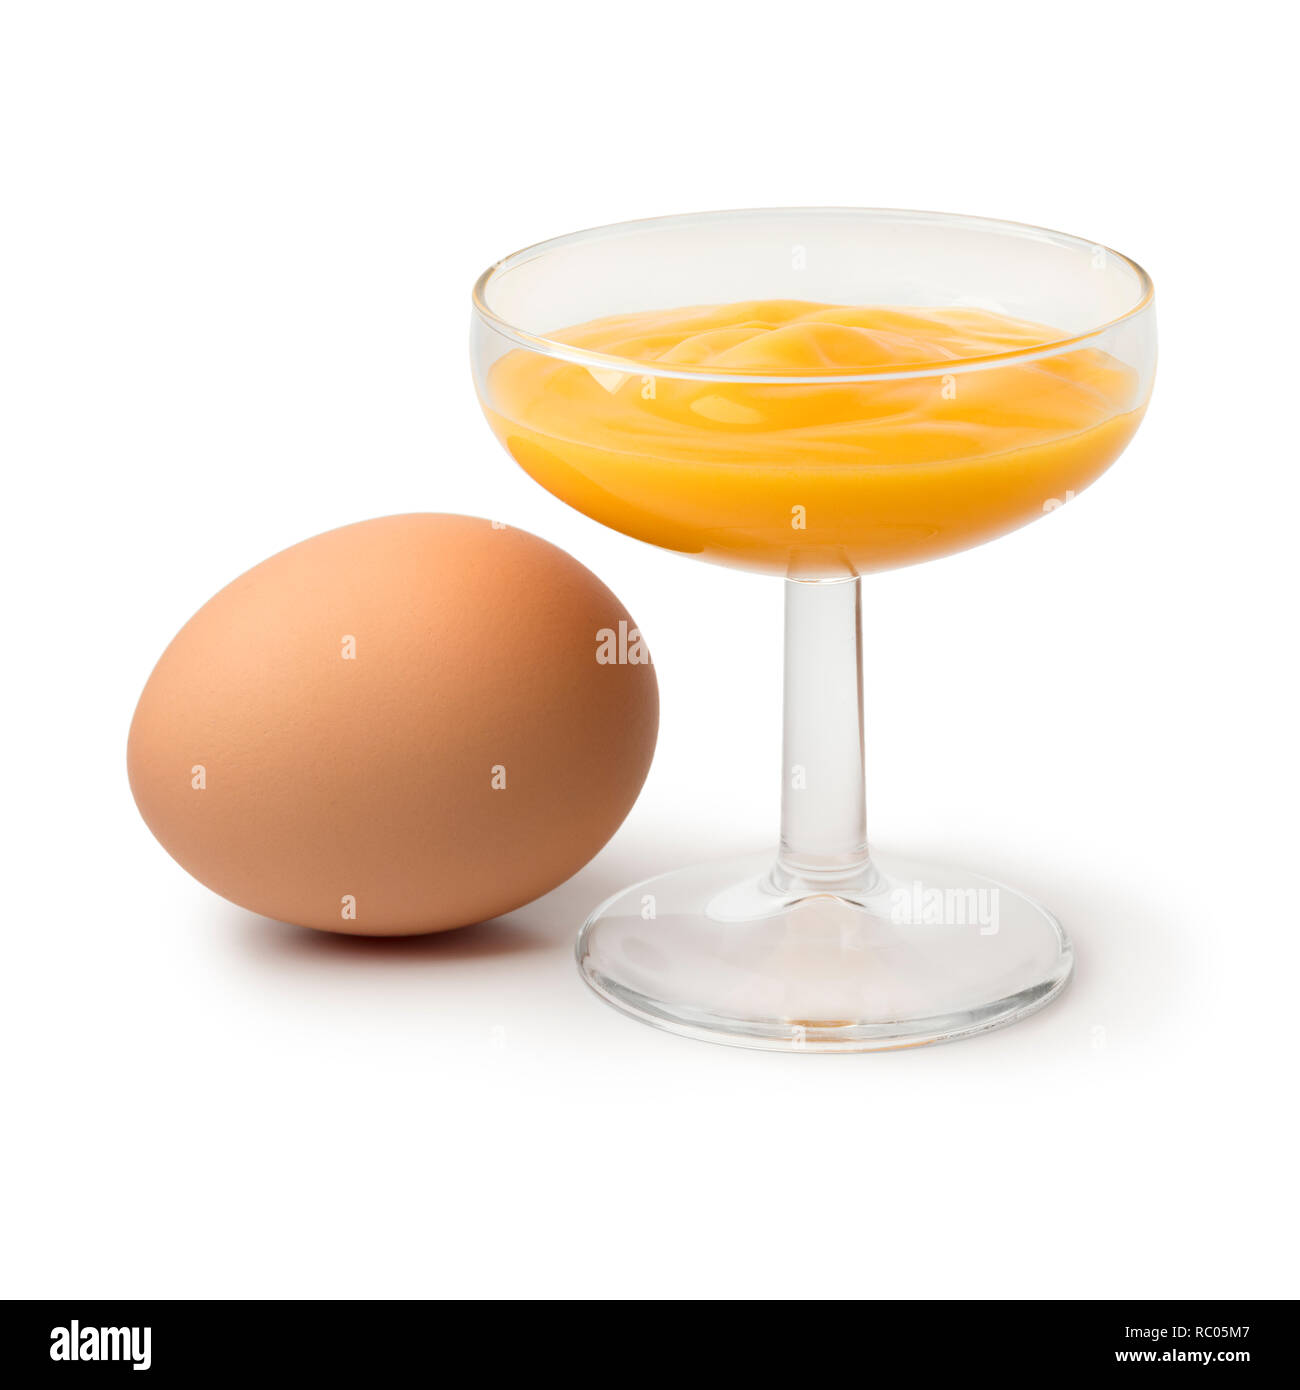 Glas mit traditionellen niederländischen advokaat Eierlikör, genannt, und  ein Ei auf weißem Hintergrund Stockfotografie - Alamy